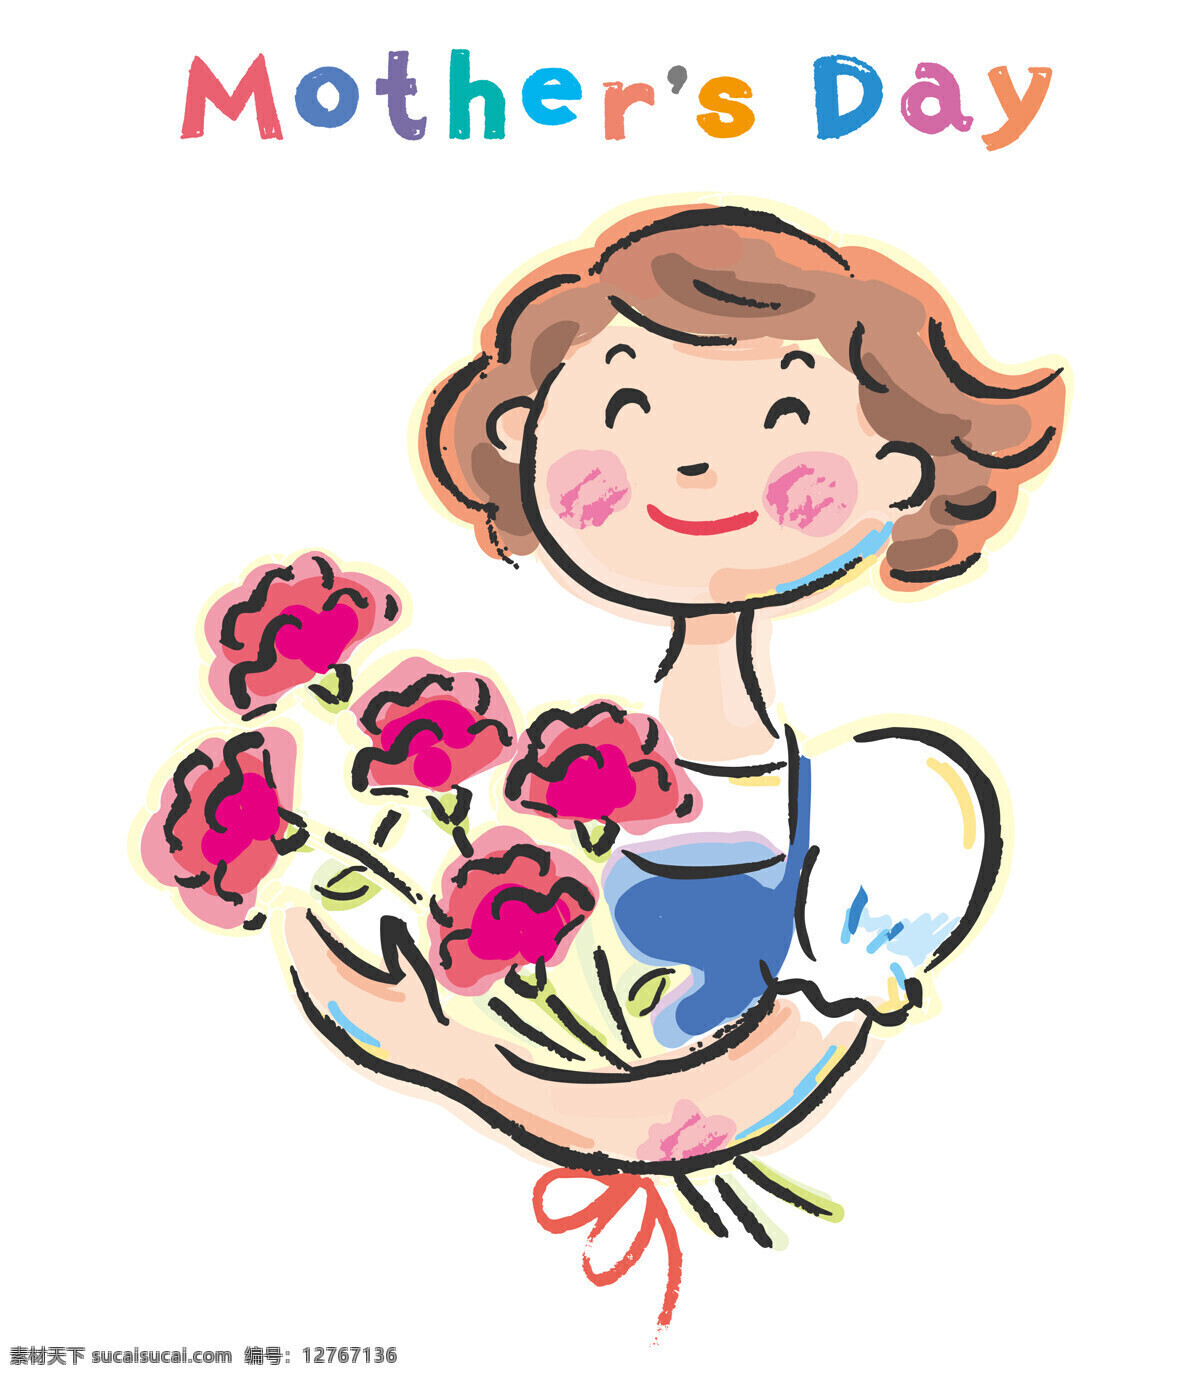 母亲节 漫画 母亲节漫画 卡通女孩 母亲节快乐 母亲节素材 节日庆典 生活百科